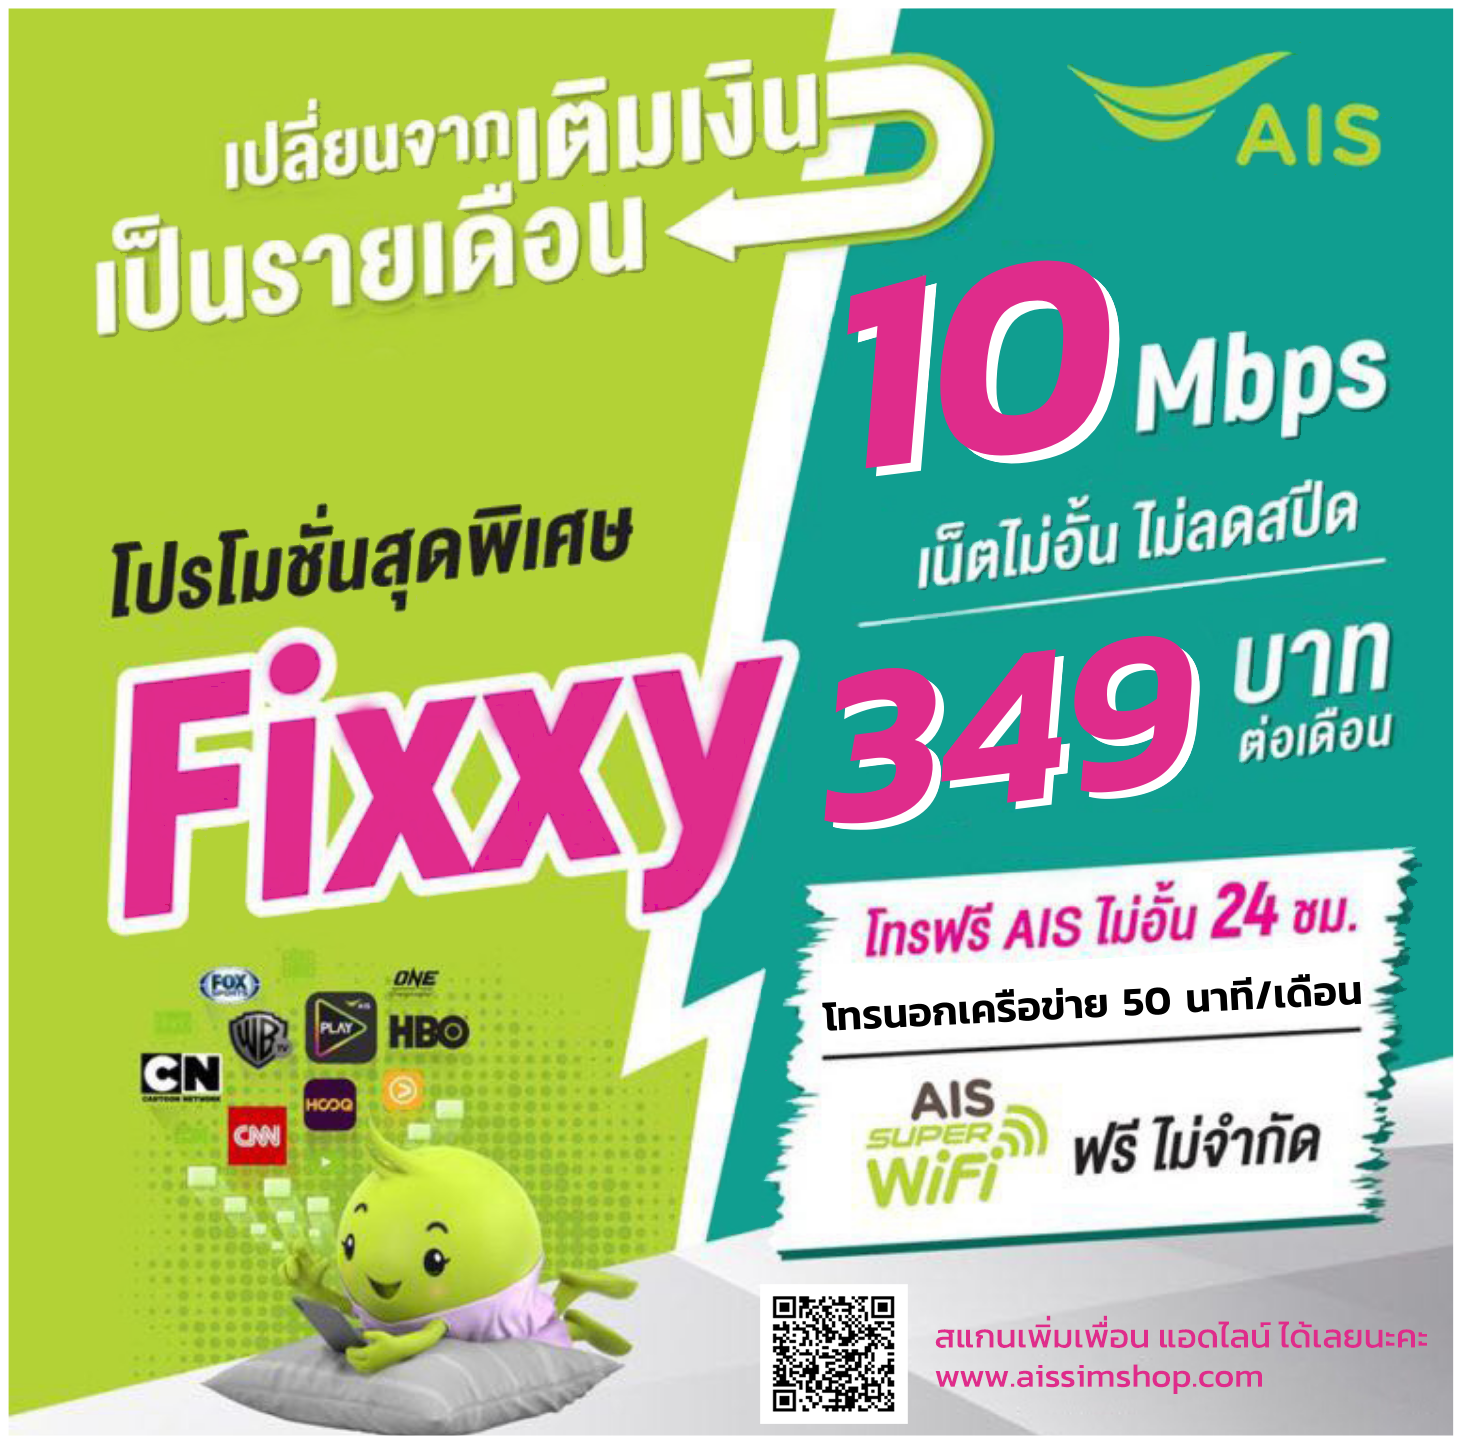 AIS Fixxy 349